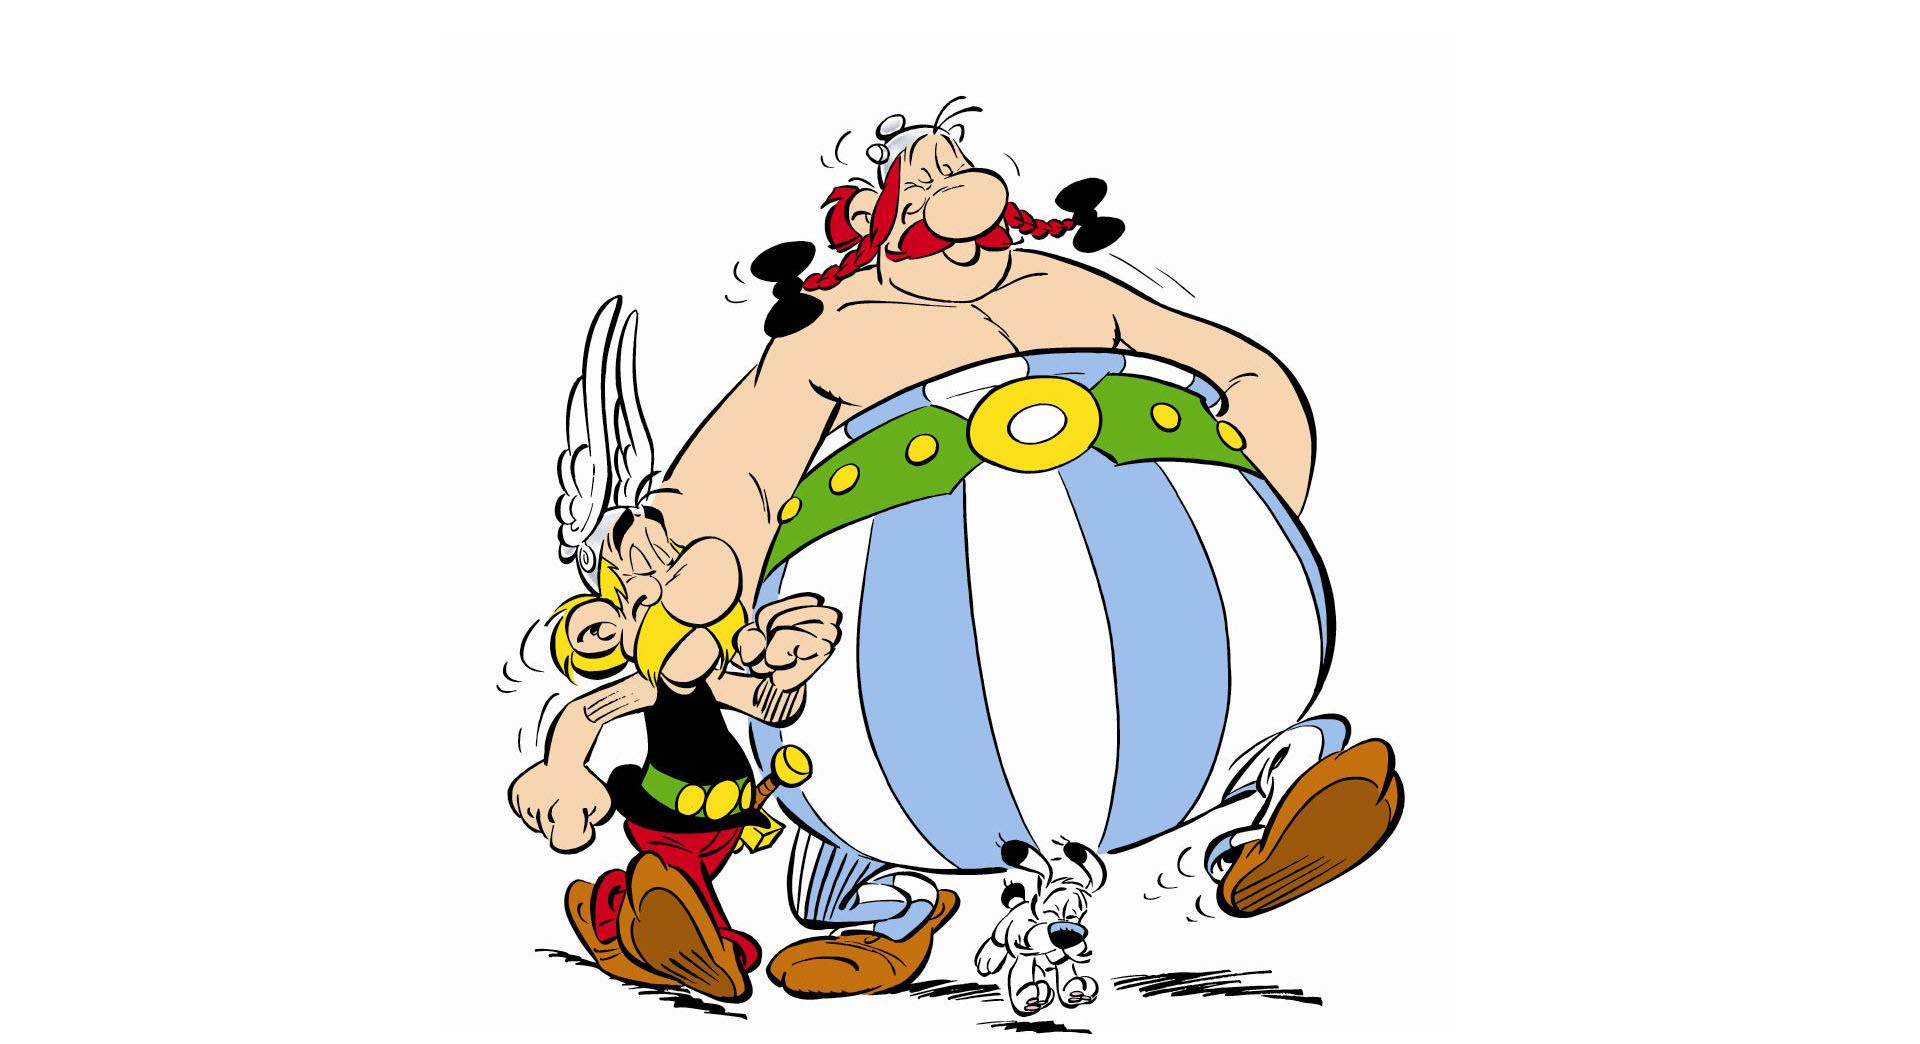 Asterix y Obelix, la pareja imbatible de la historieta francesa